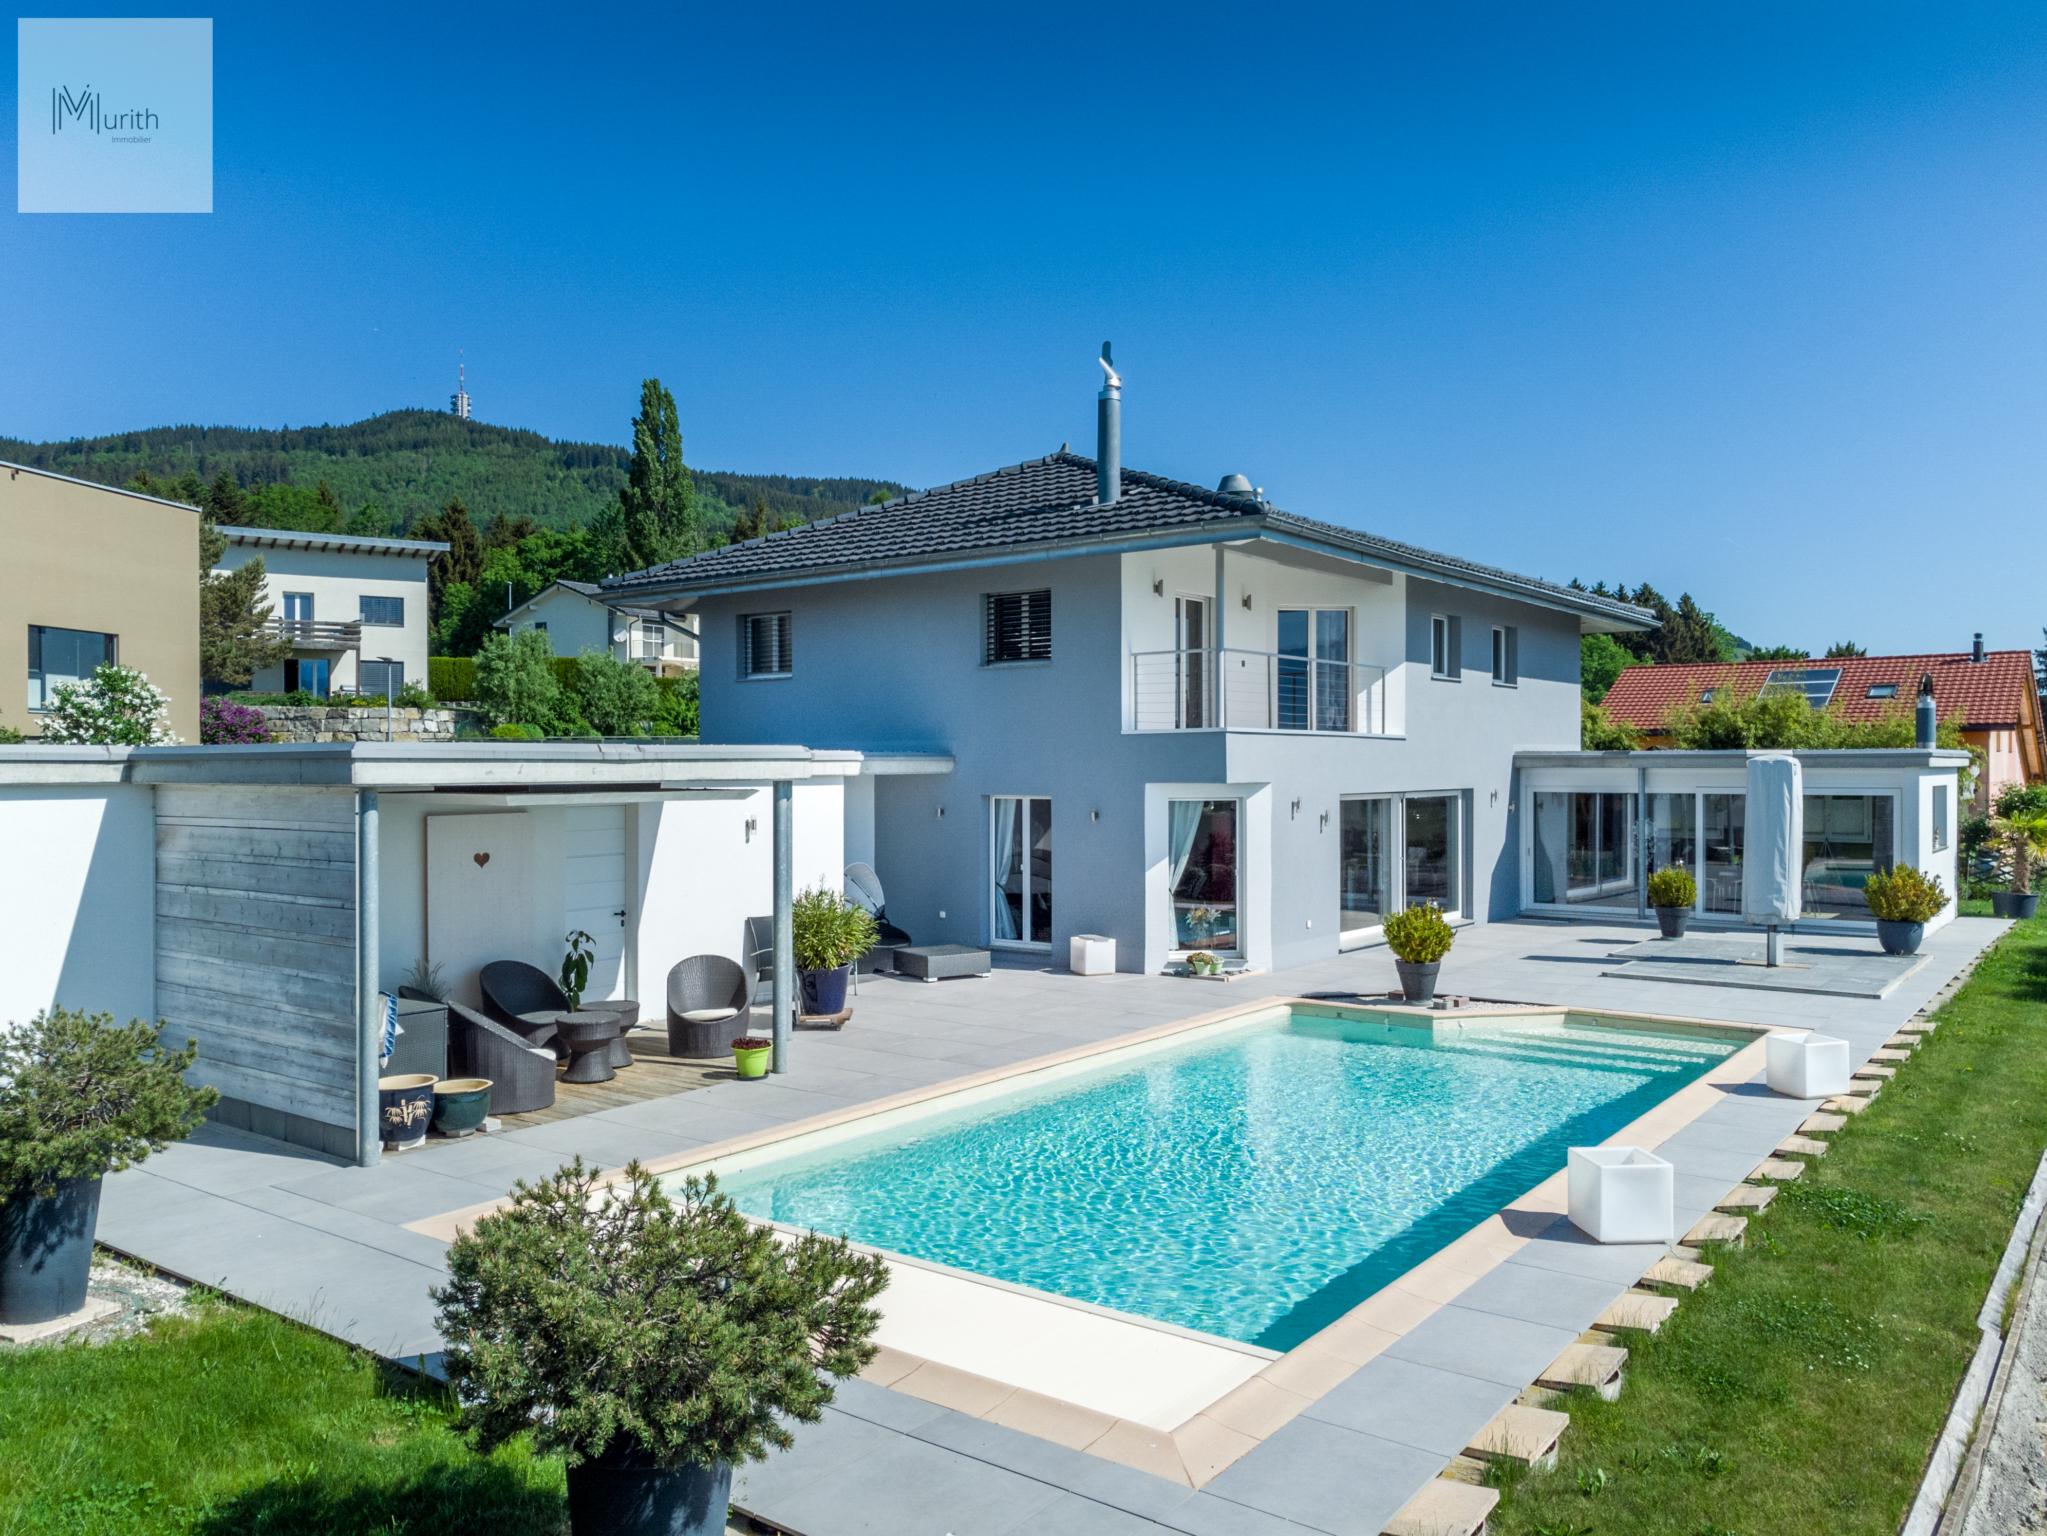 Splendide villa 5.5 pièces avec piscine et vue imprenable sur le Moléson !